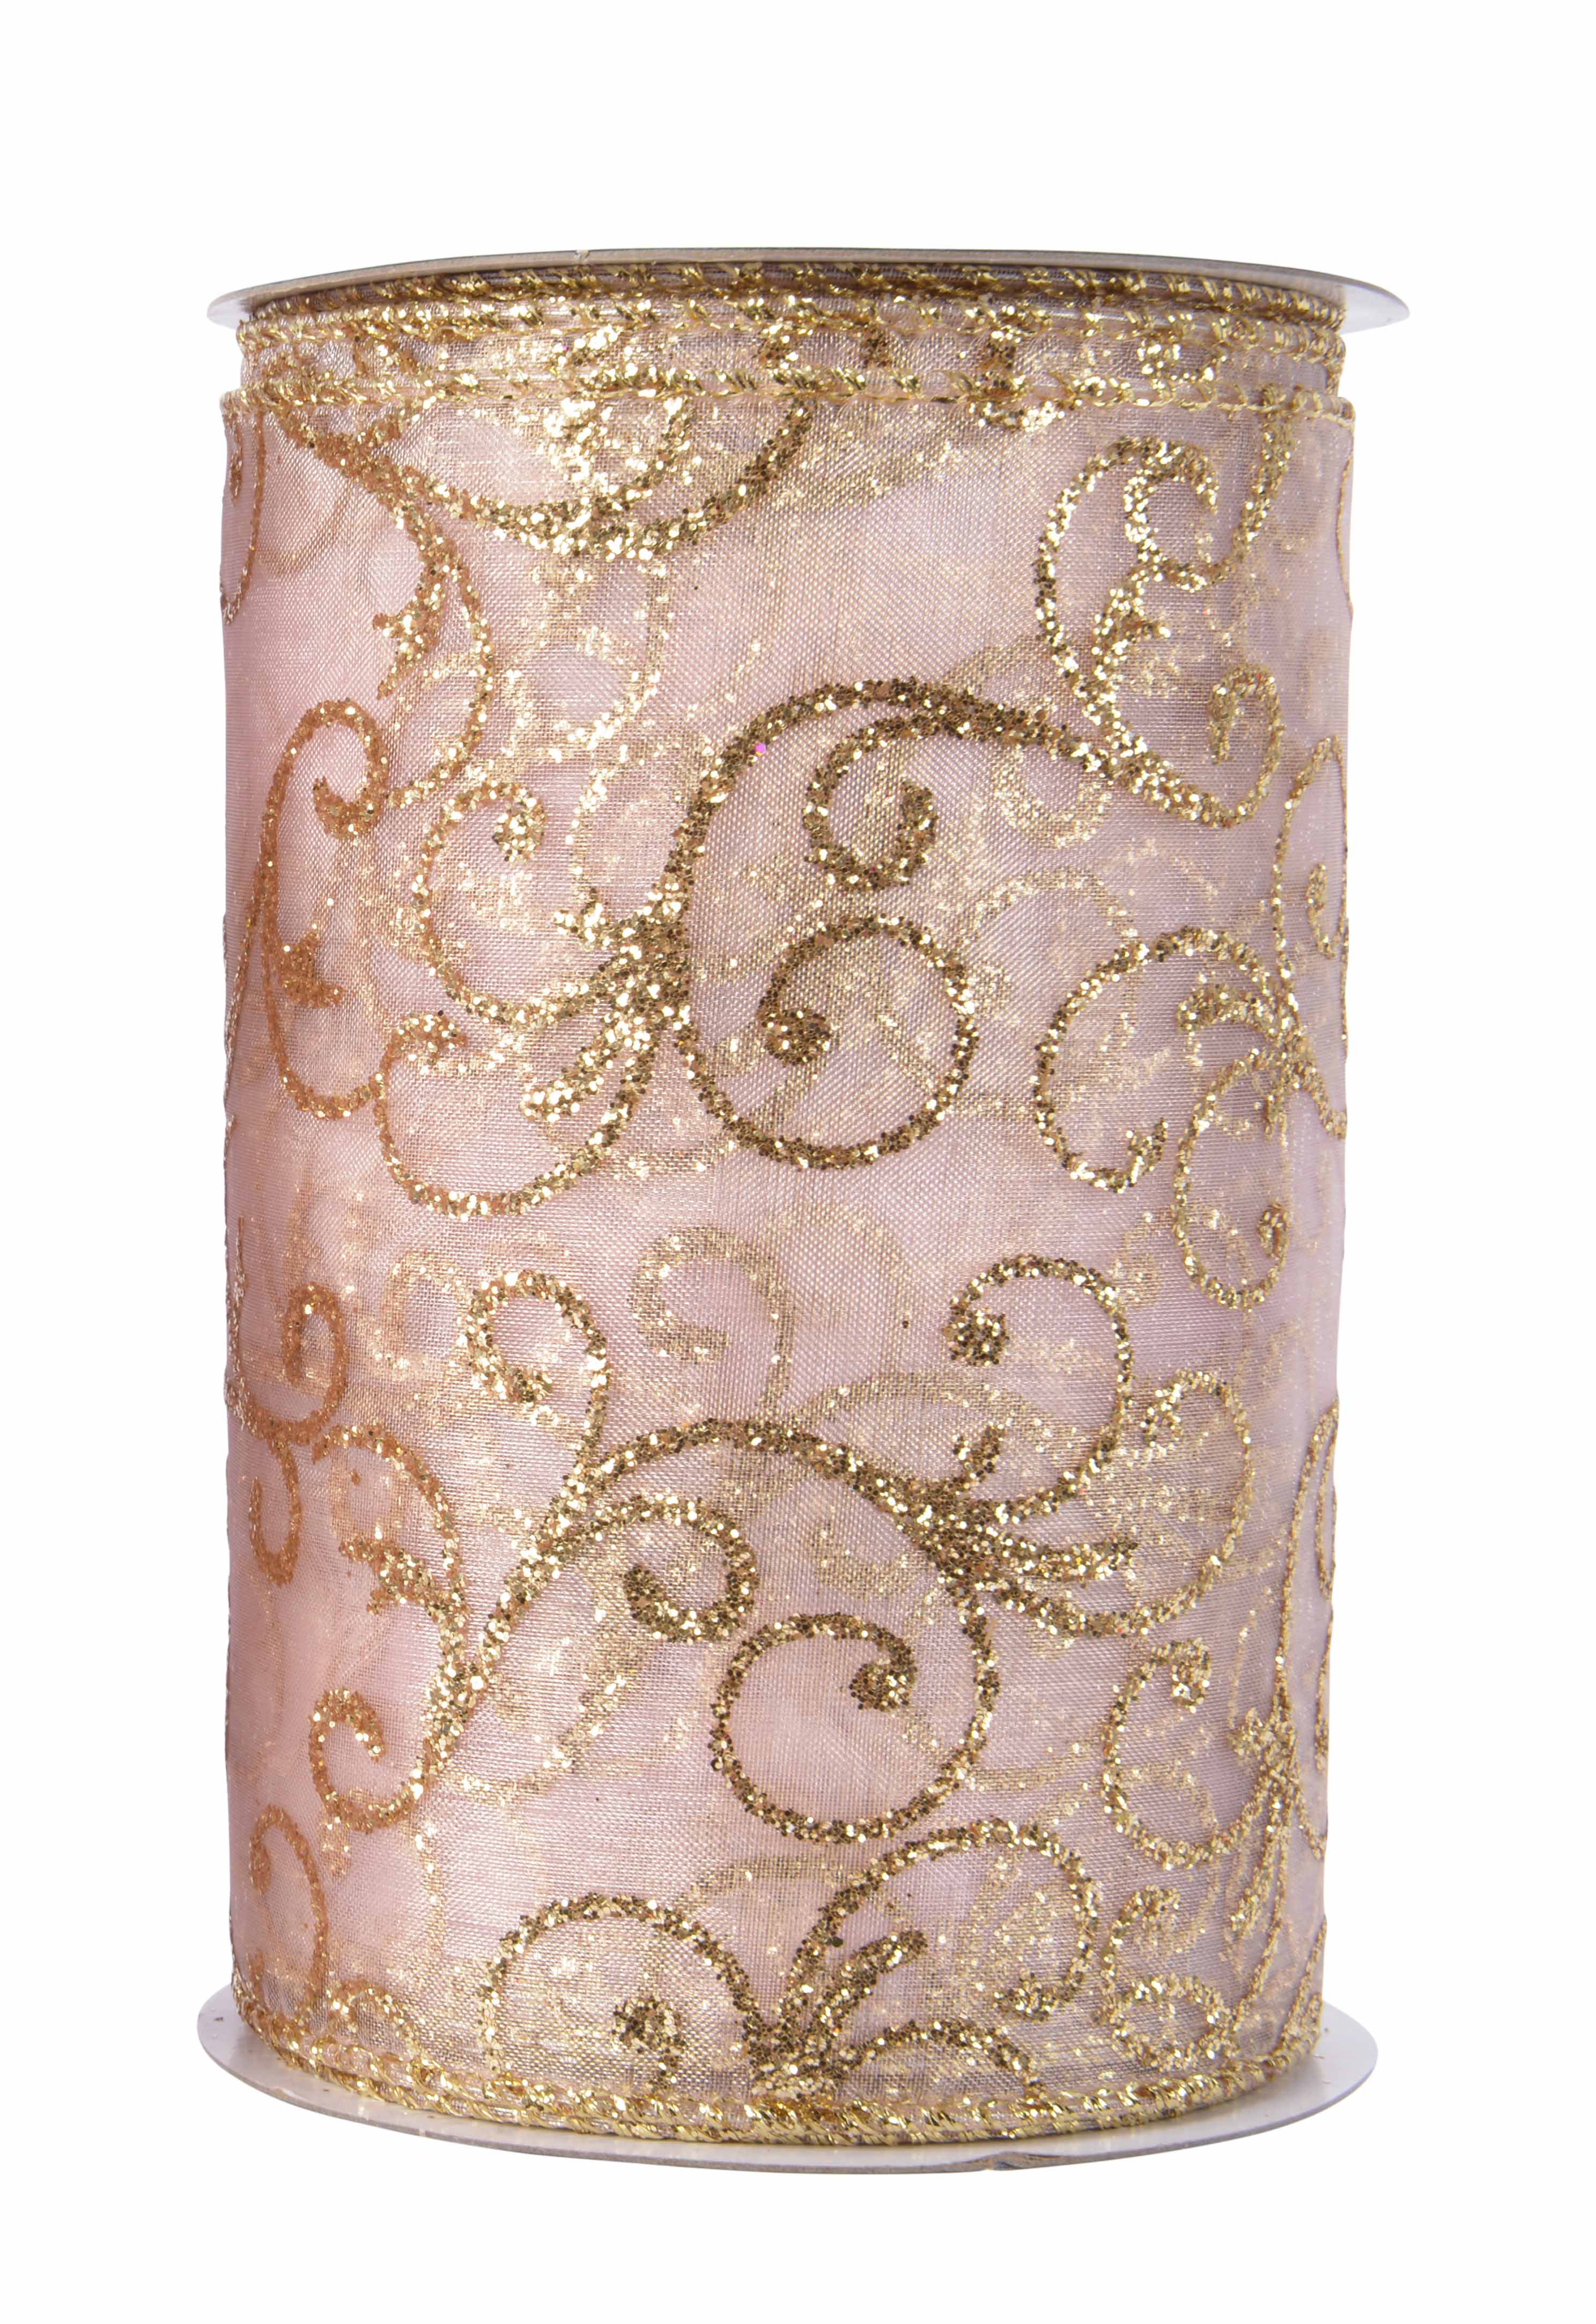 Organzaband rosa mit Drahtkante Ornamente gold Glitter 12,7x270cm